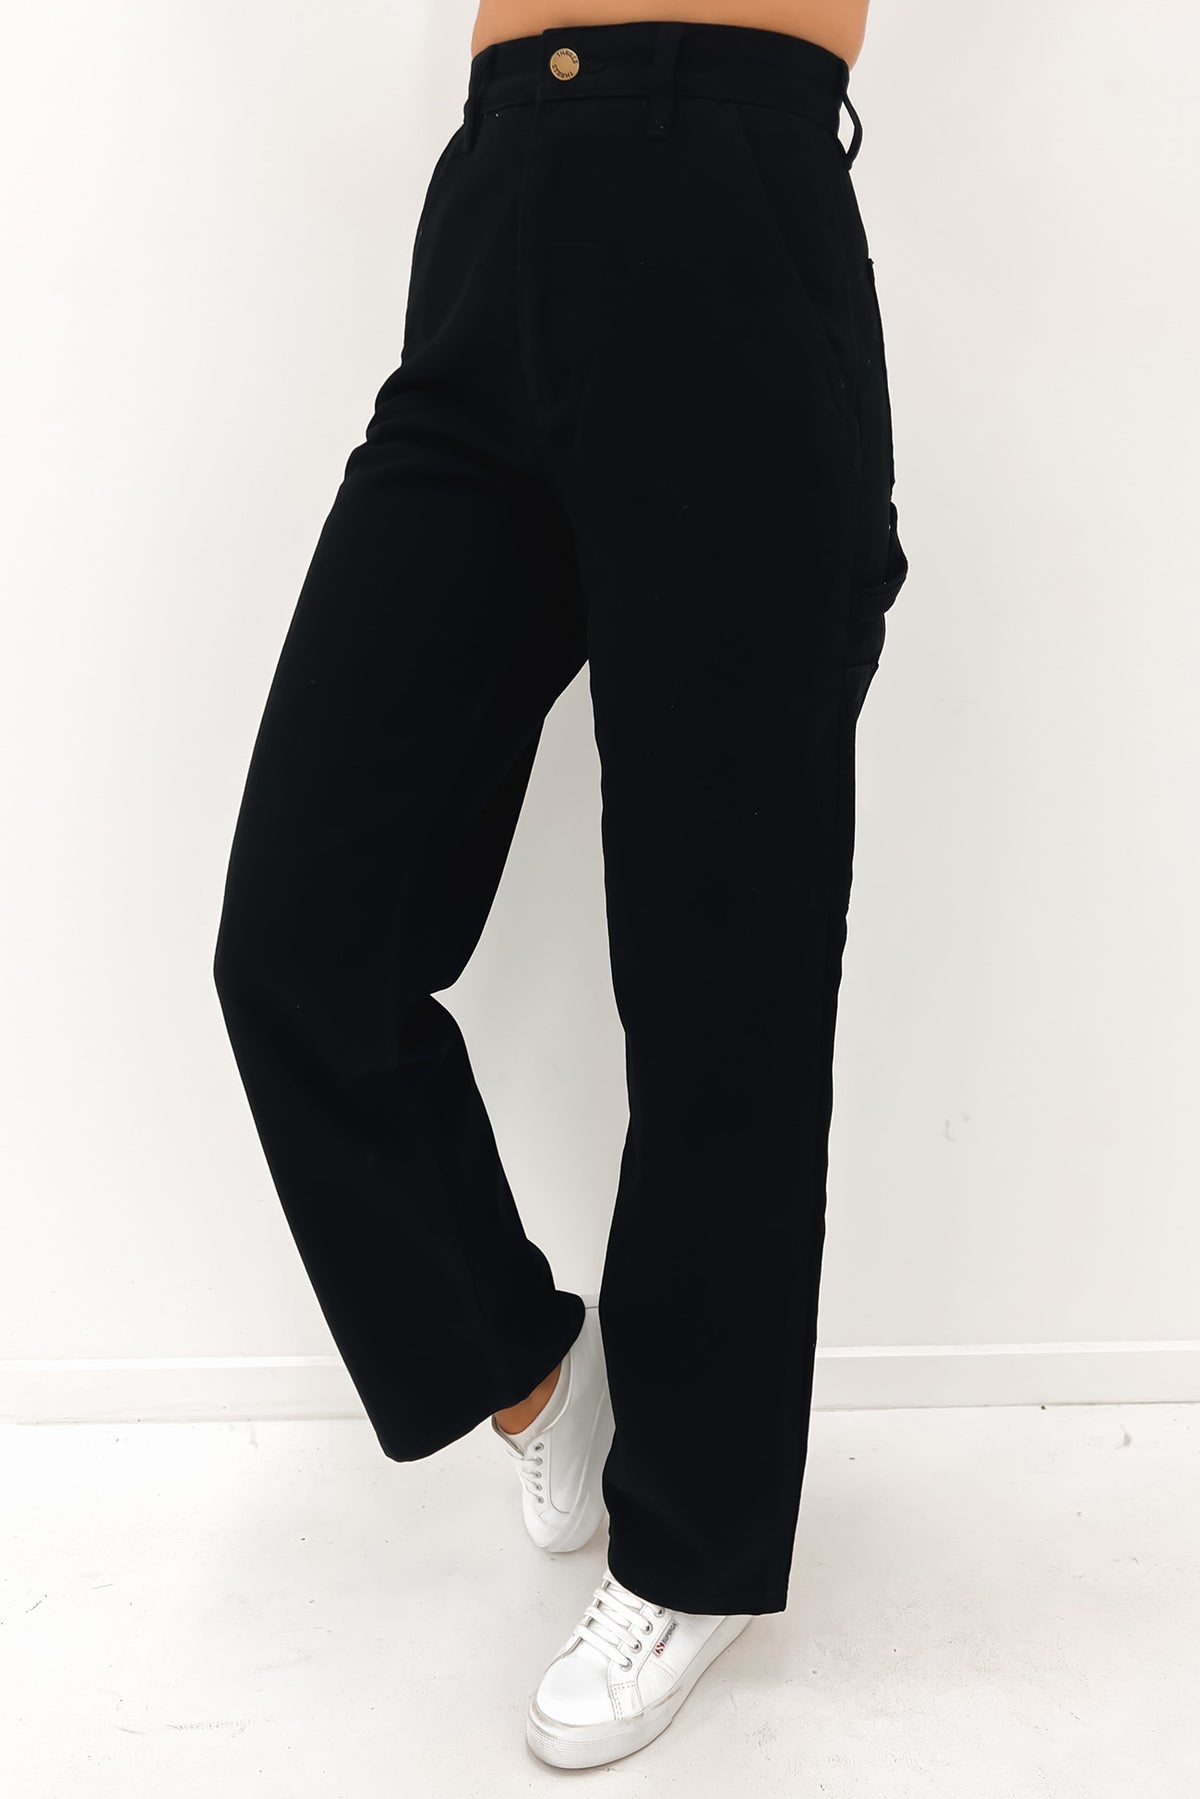 Denim Carpenter Trousers - Luxury Black